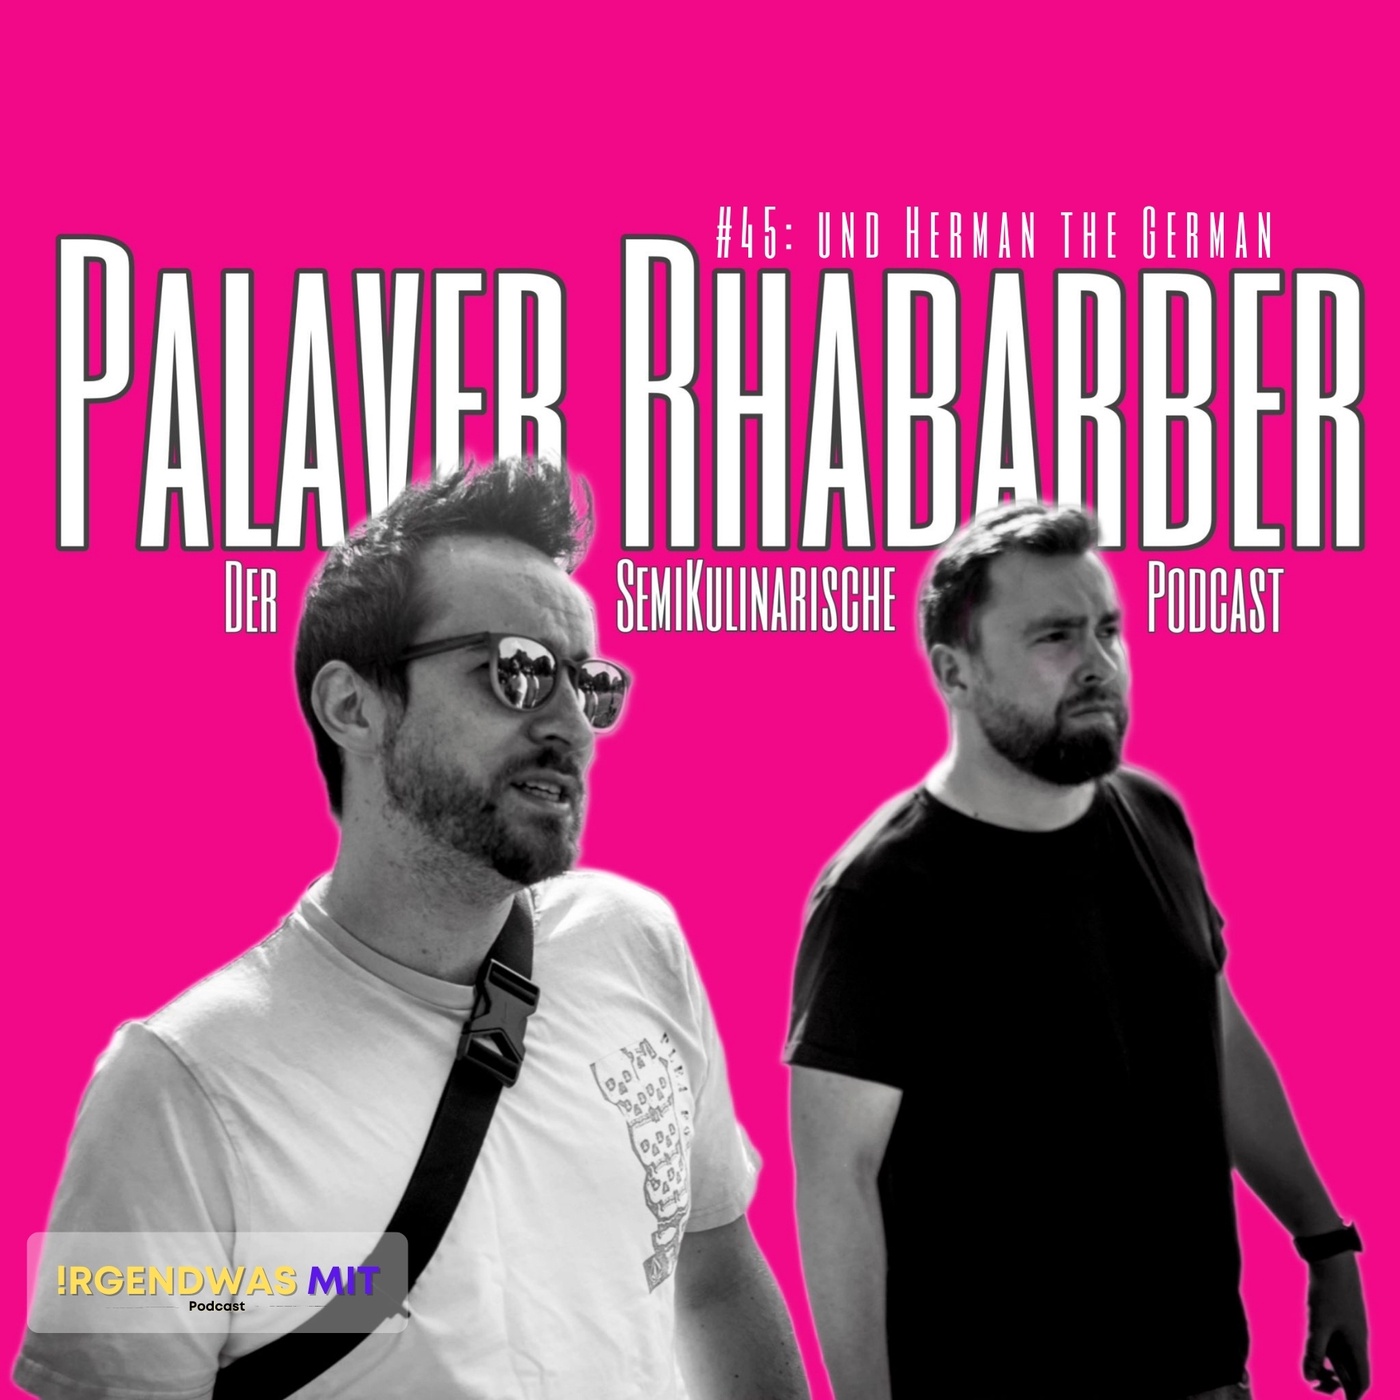 #45 Palaver Rhabarber und Herman the German